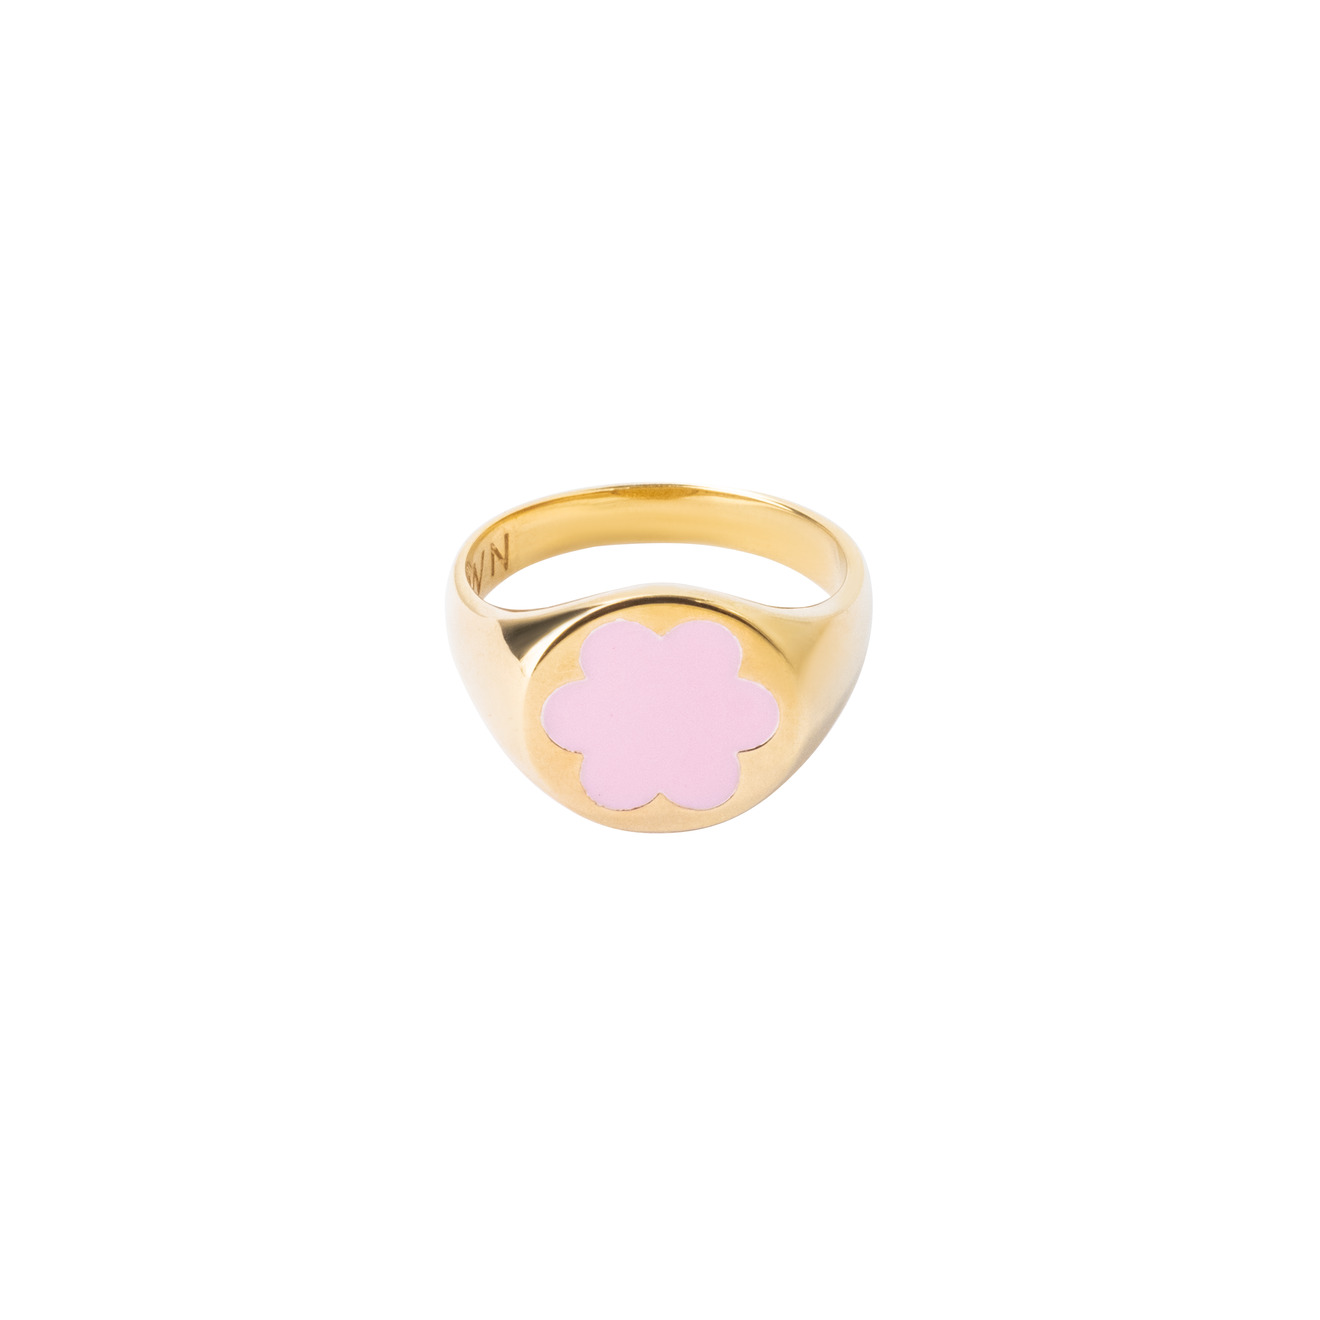 Moonswoon Позолоченная кольцо-печатка из серебра розовая незабудка moonswoon кольцо печатка незабудка из серебра